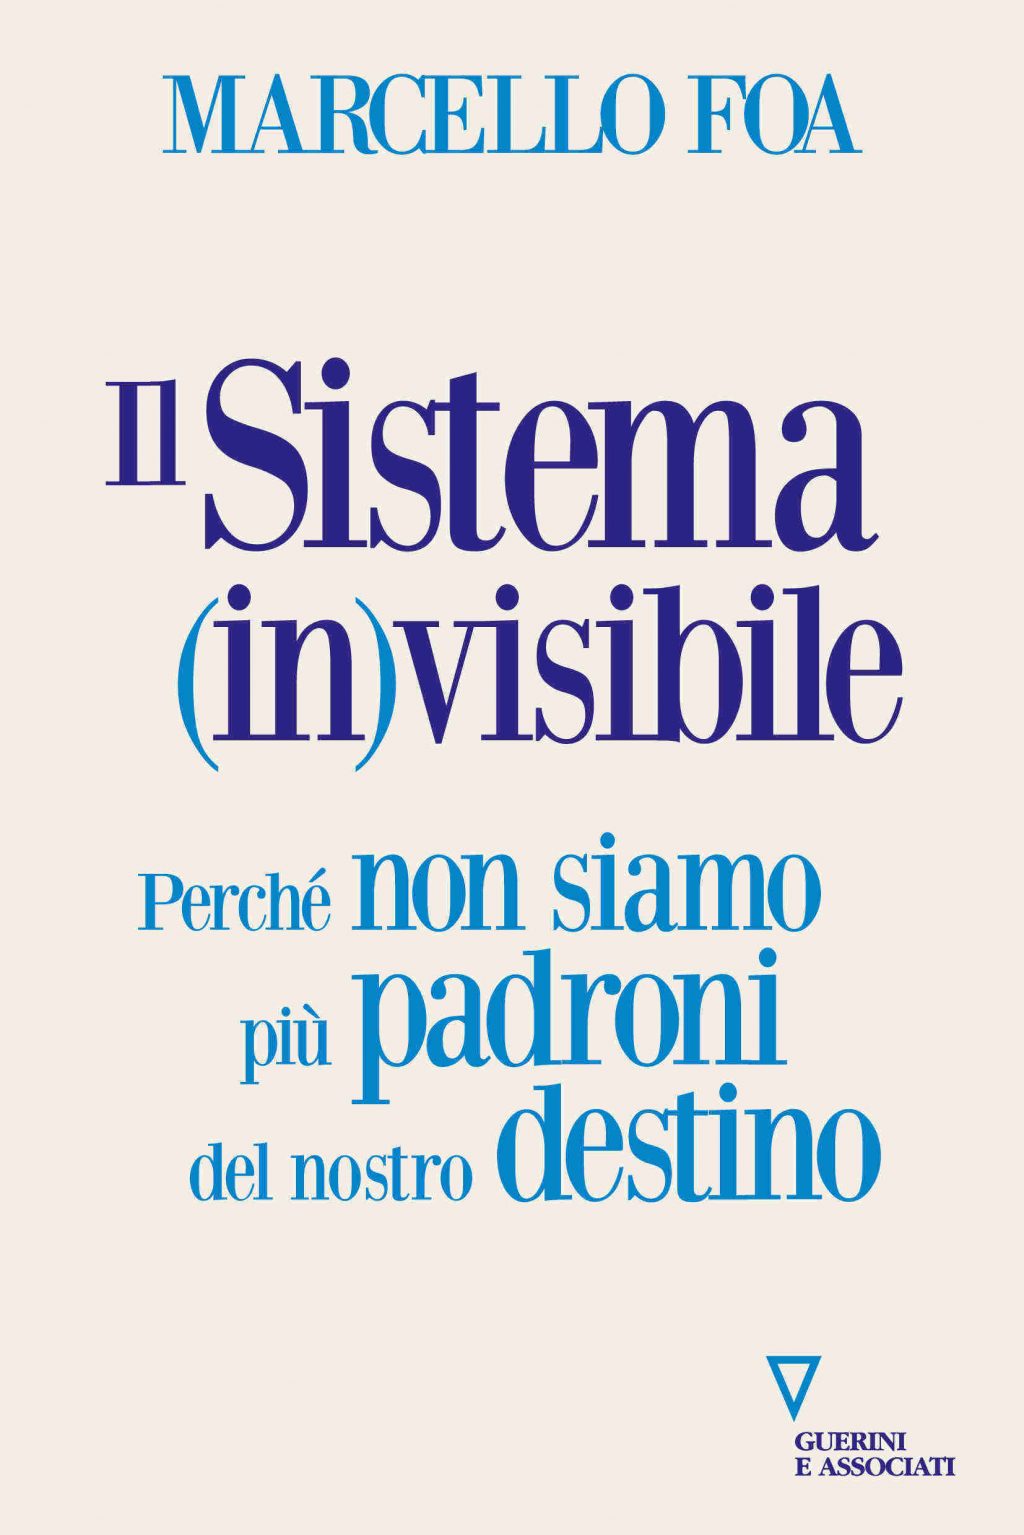 IL SISTEMA (IN)VISIBILE - Marcello Foa - video intervista